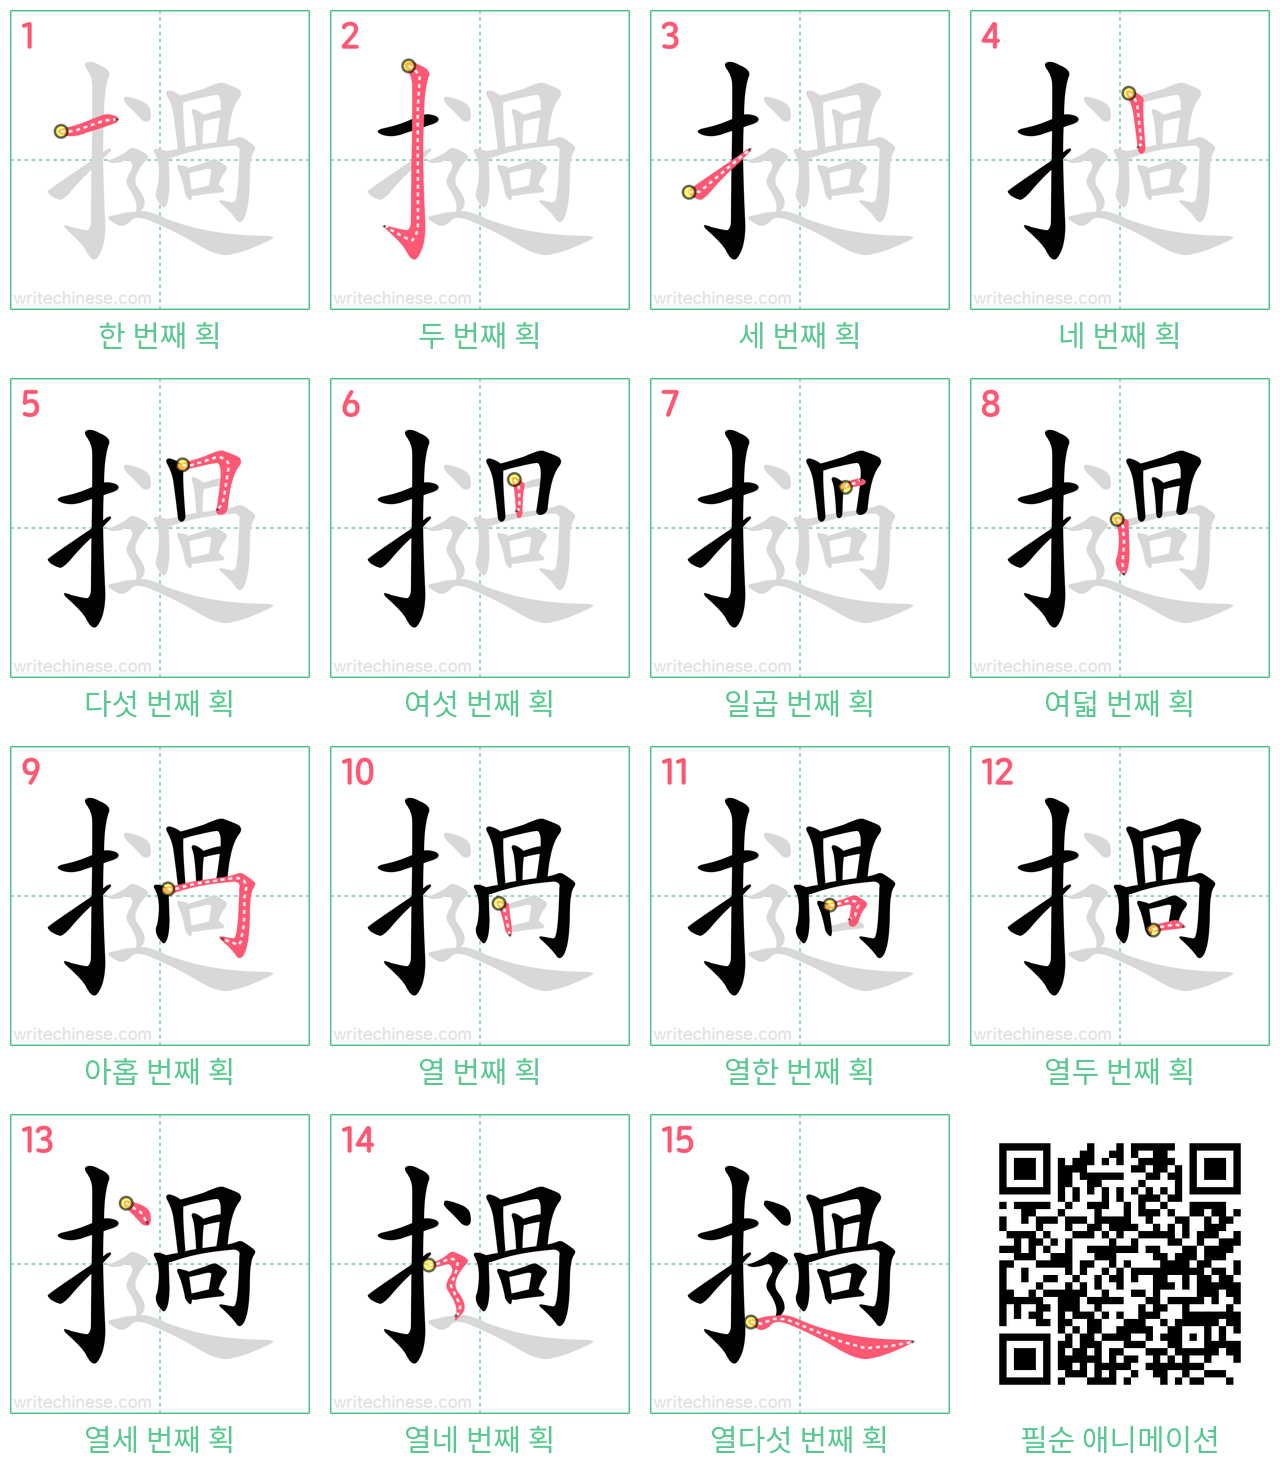 撾 step-by-step stroke order diagrams